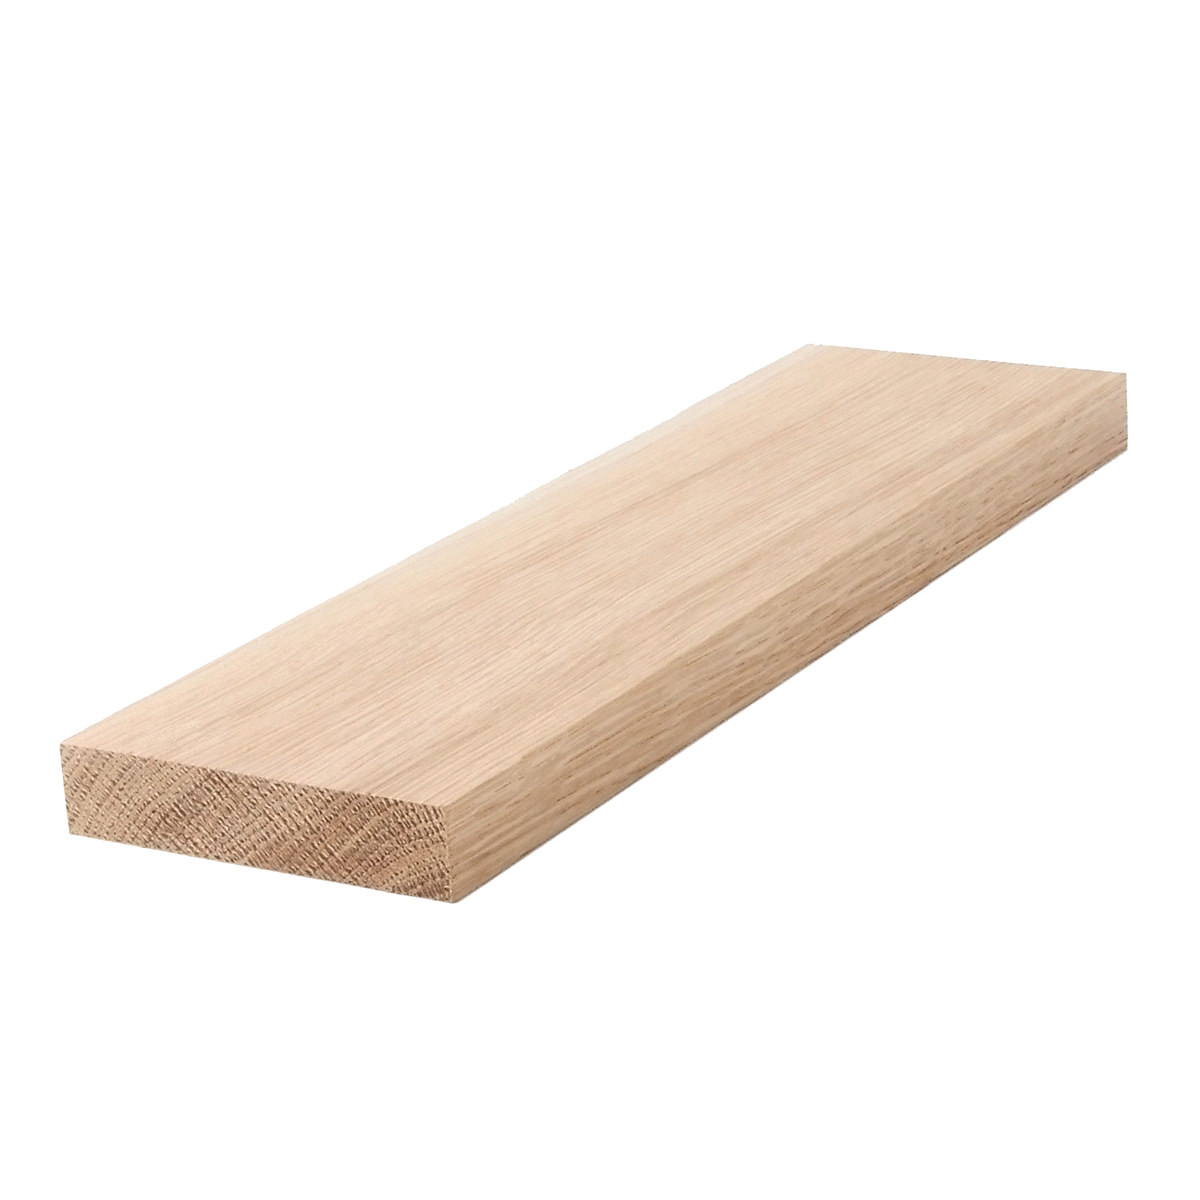 1 X 4 Cedar Board